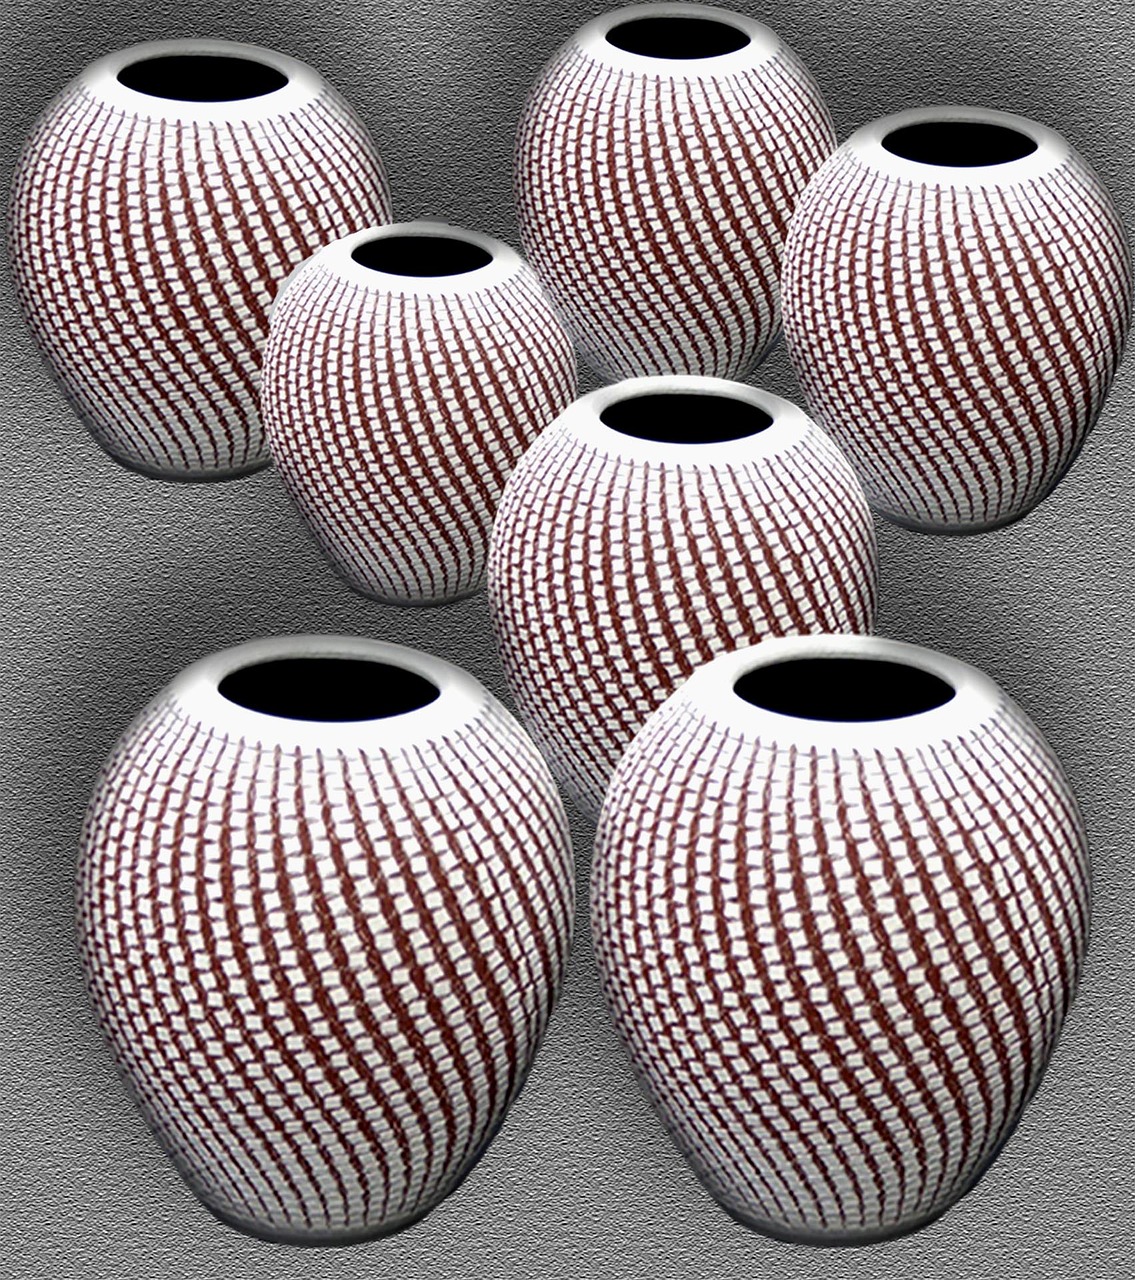 ceramic pots ceramic deco free photo